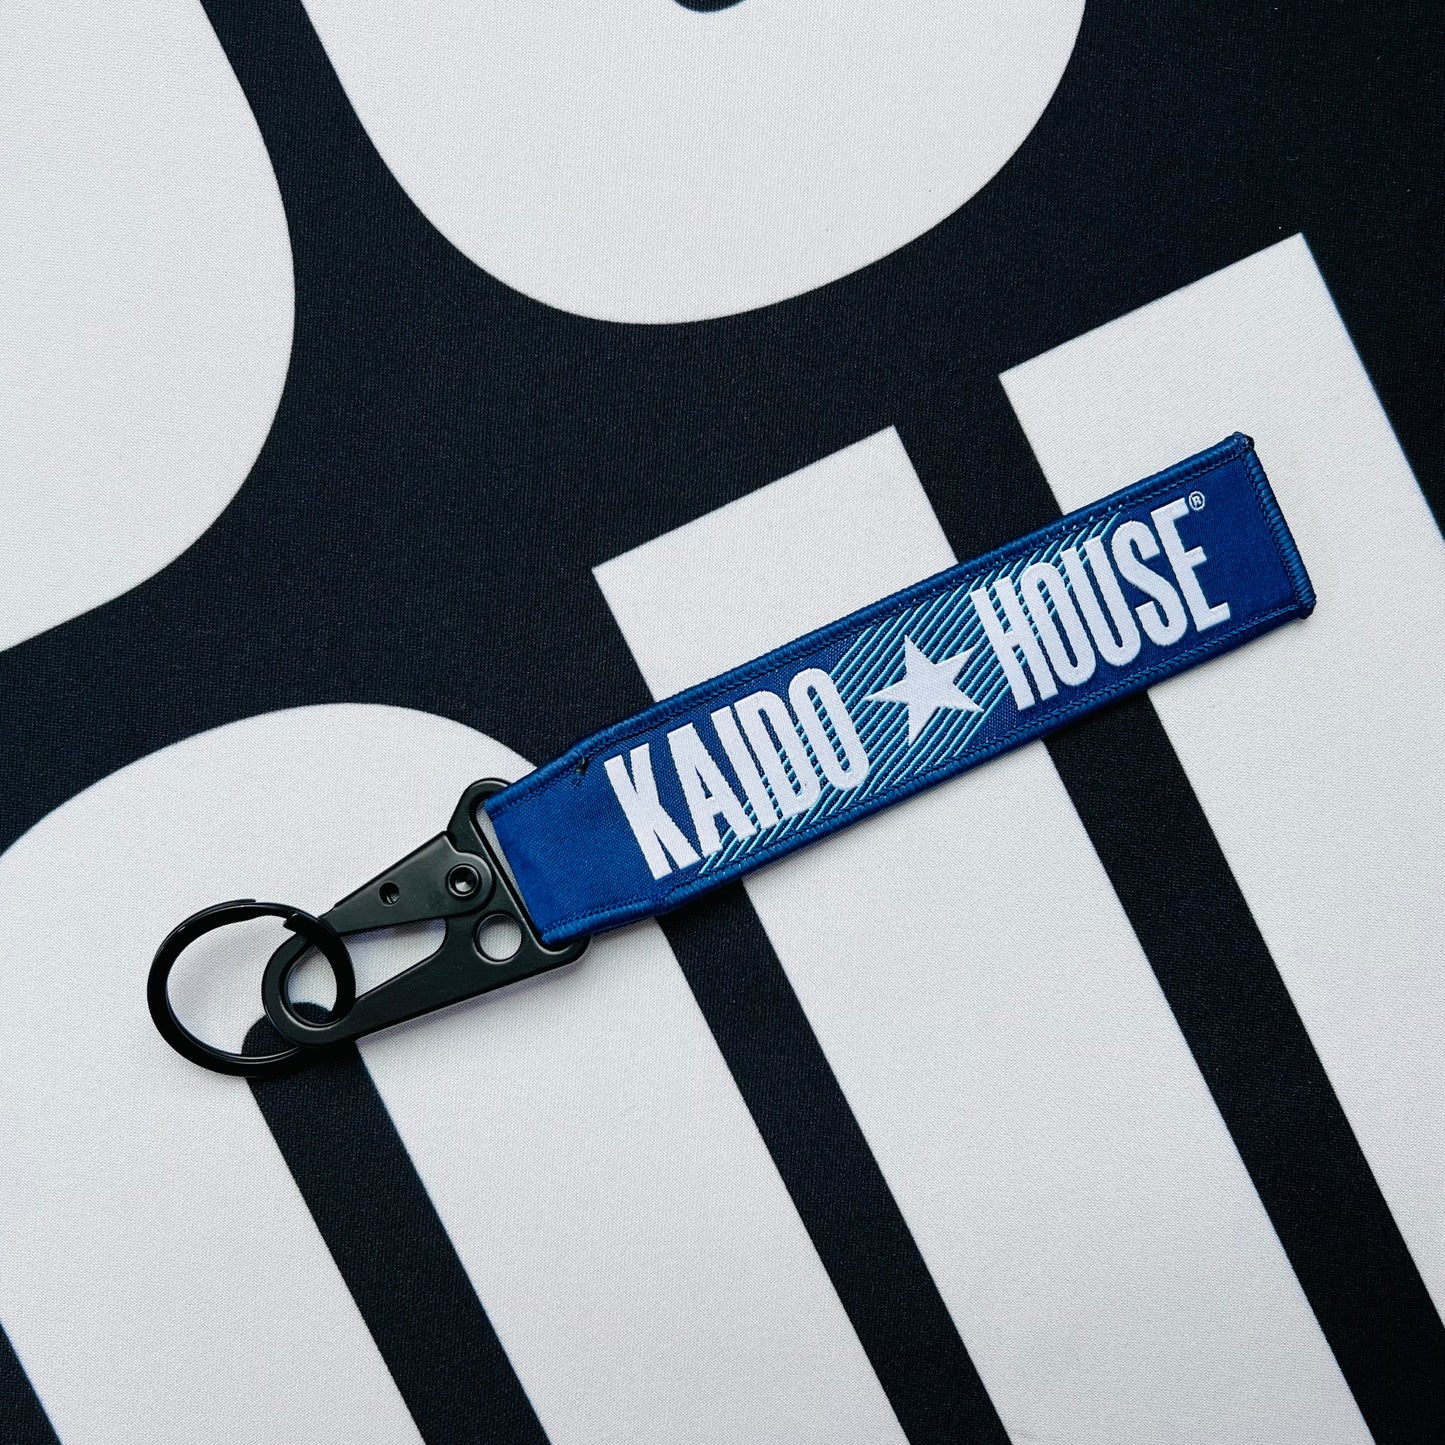 Kaido House jet tag keychain, blue